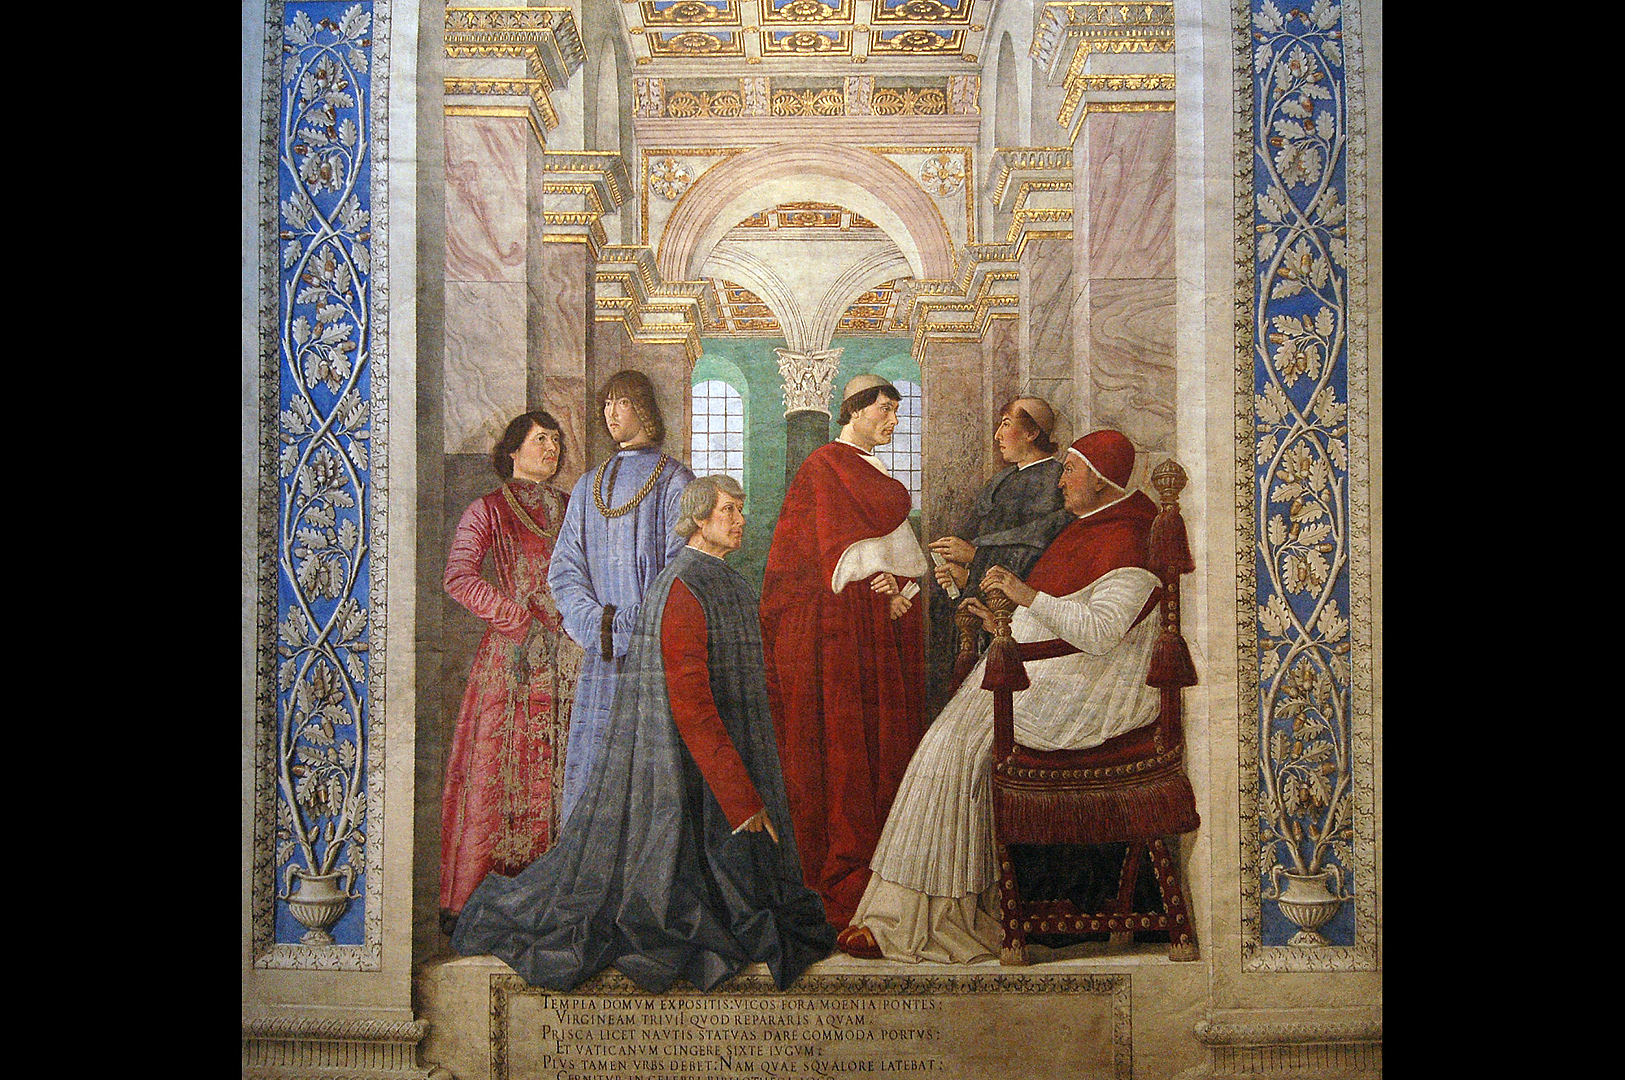 Melozzo da Forl, Vatican Museums, Rome, Fresco by Melozzo da Forli, Rome, Italy